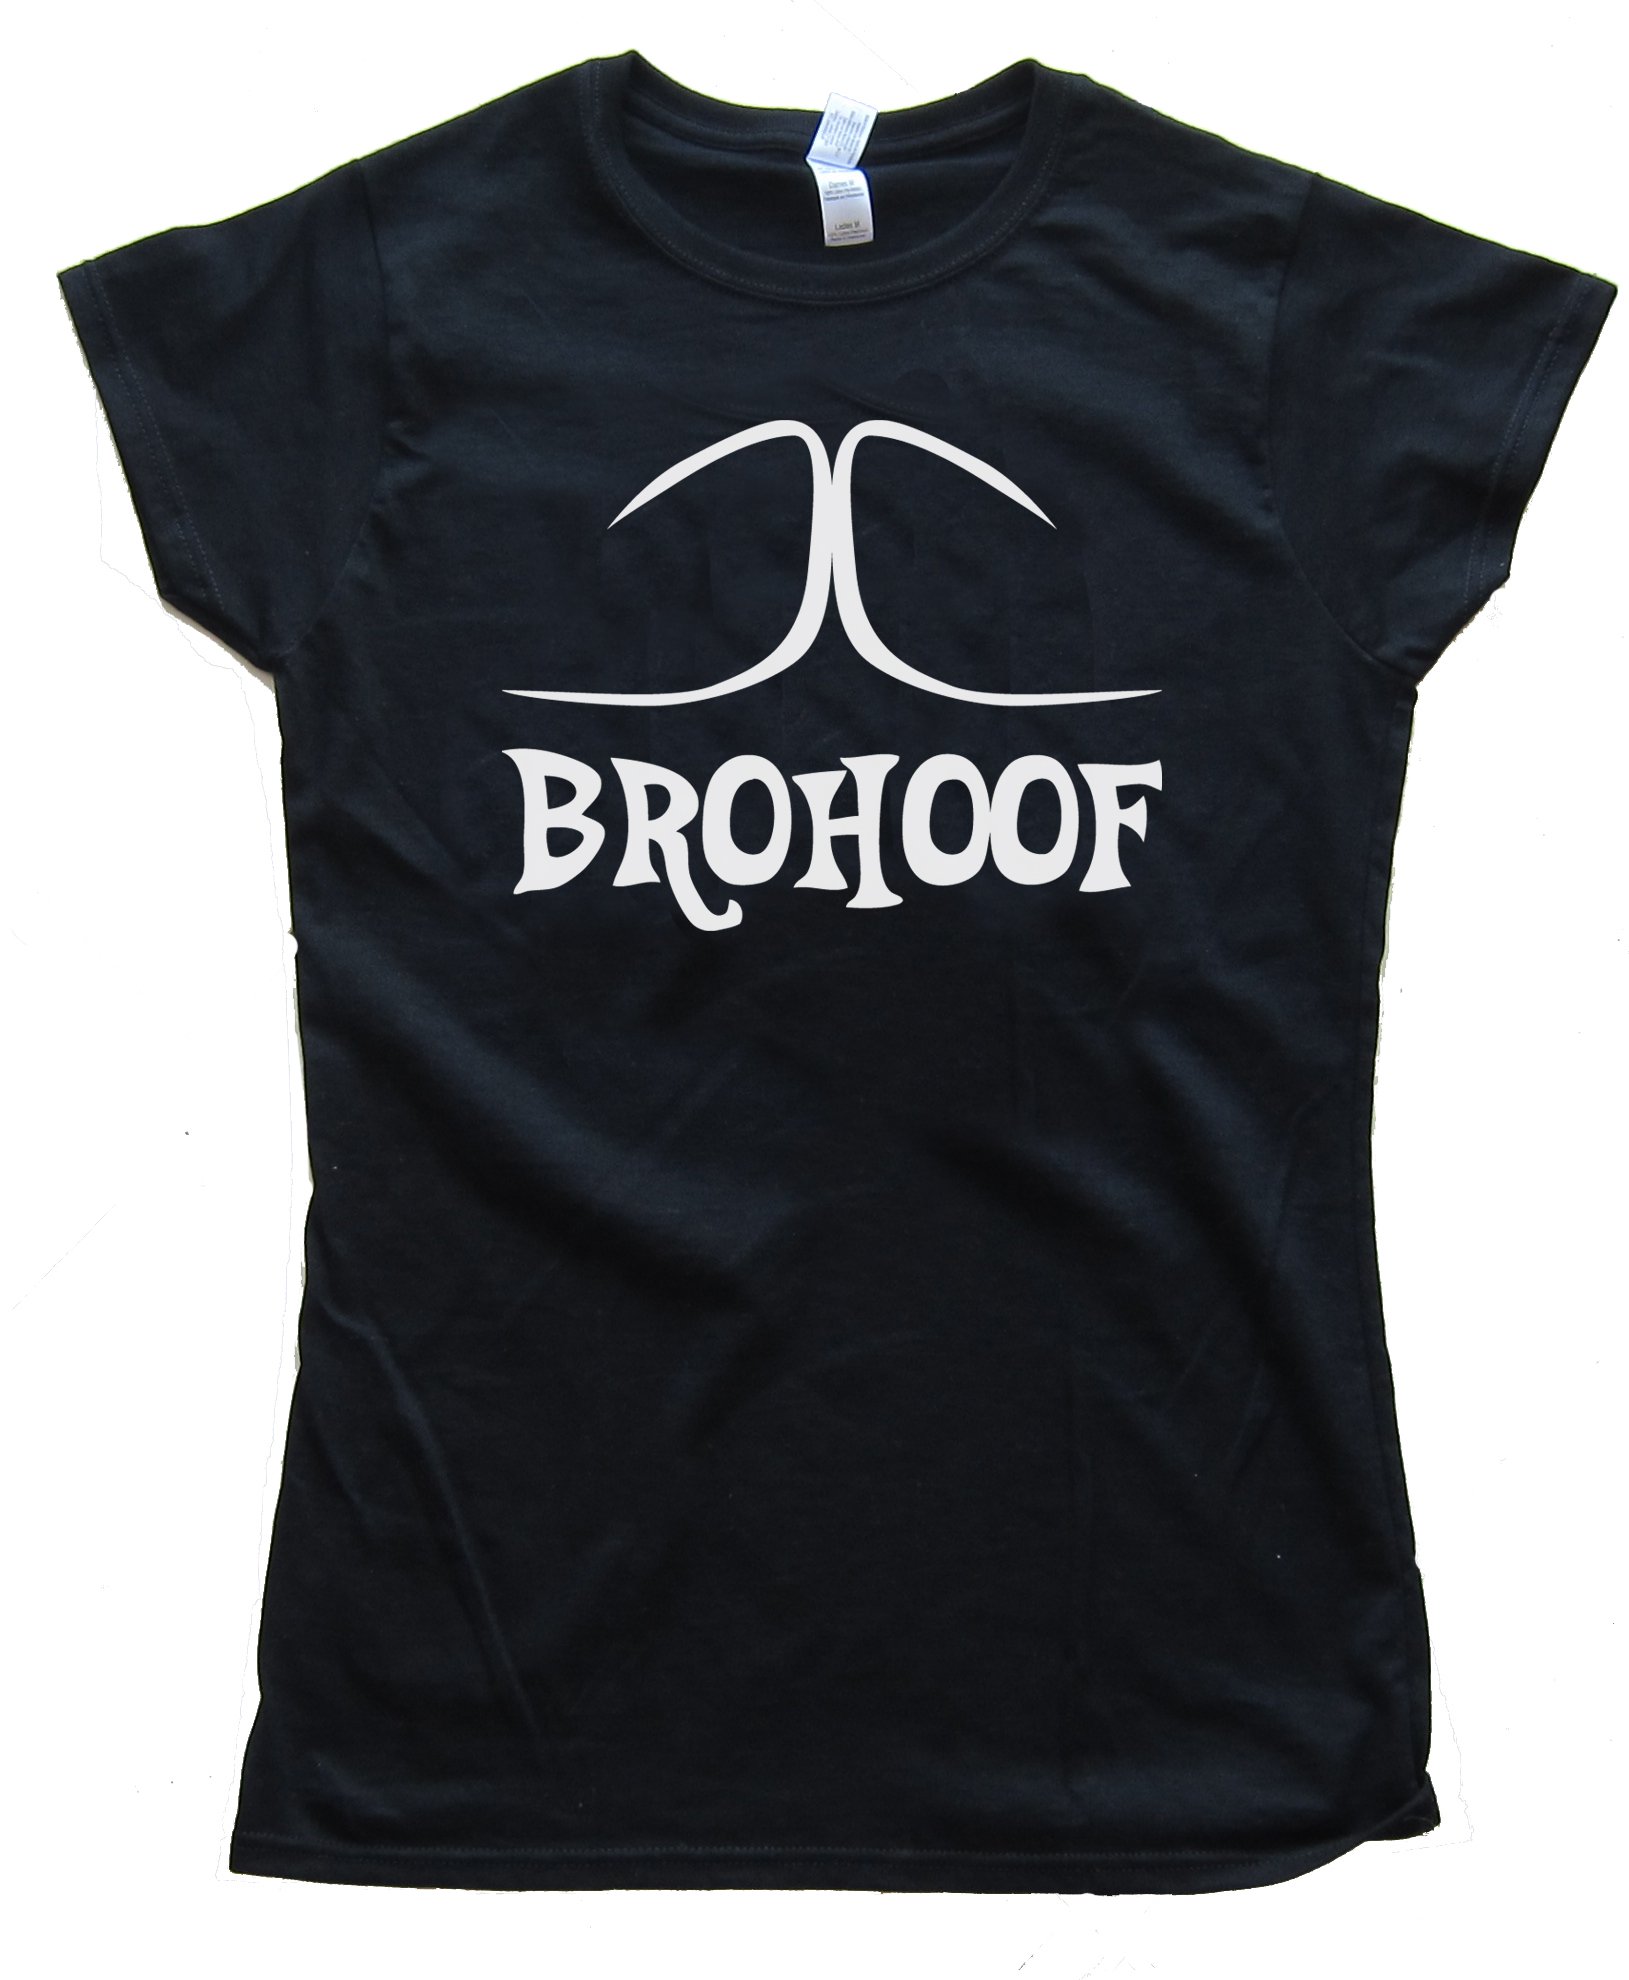 Womens Brohoof - My Little Pony Tee Shirt